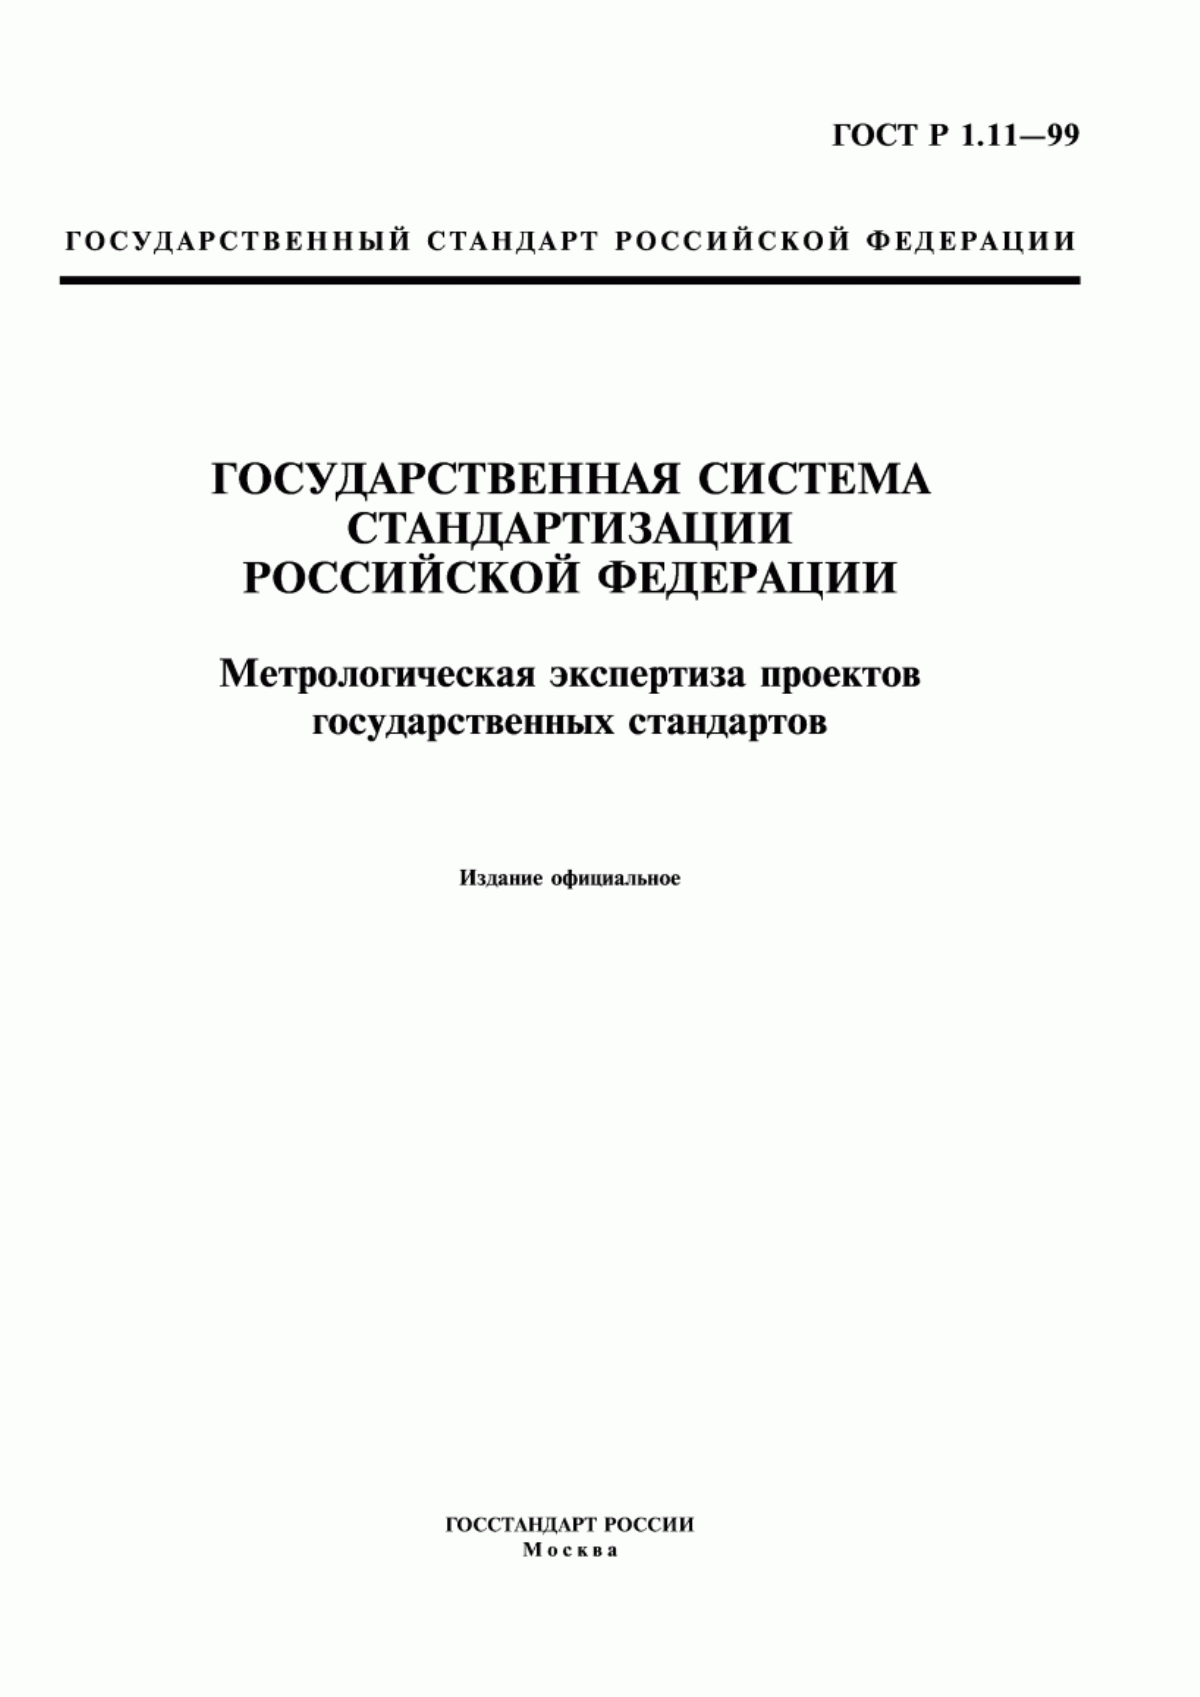 ГОСТ Р 1.11-99 Государственная система стандартизации Российской Федерации. Метрологическая экспертиза проектов государственных стандартов